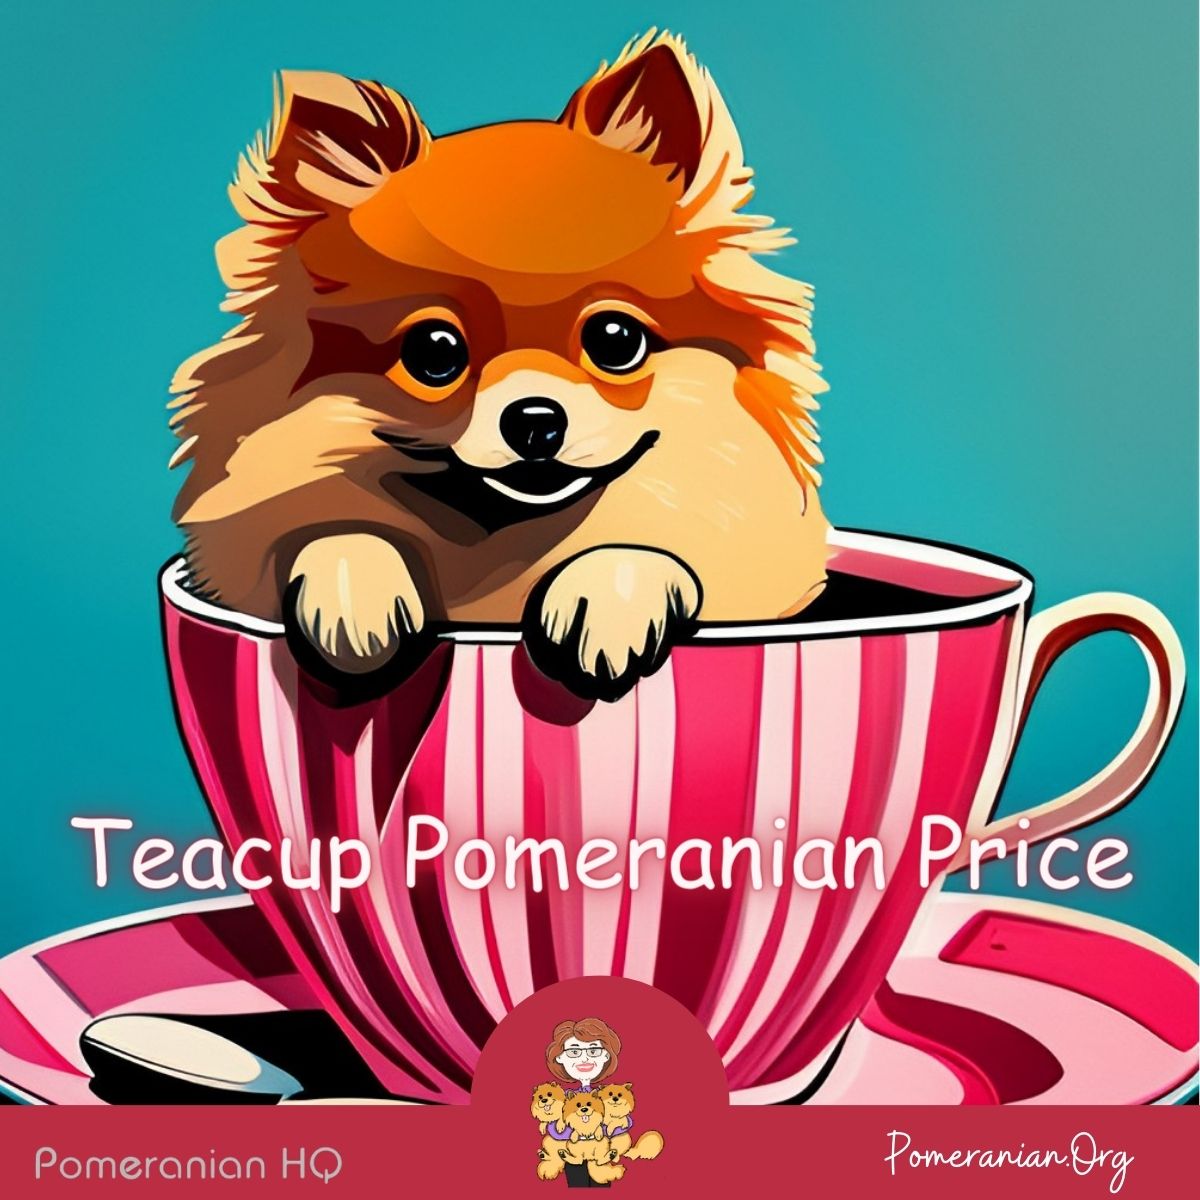 Teacup Pomeranian Price